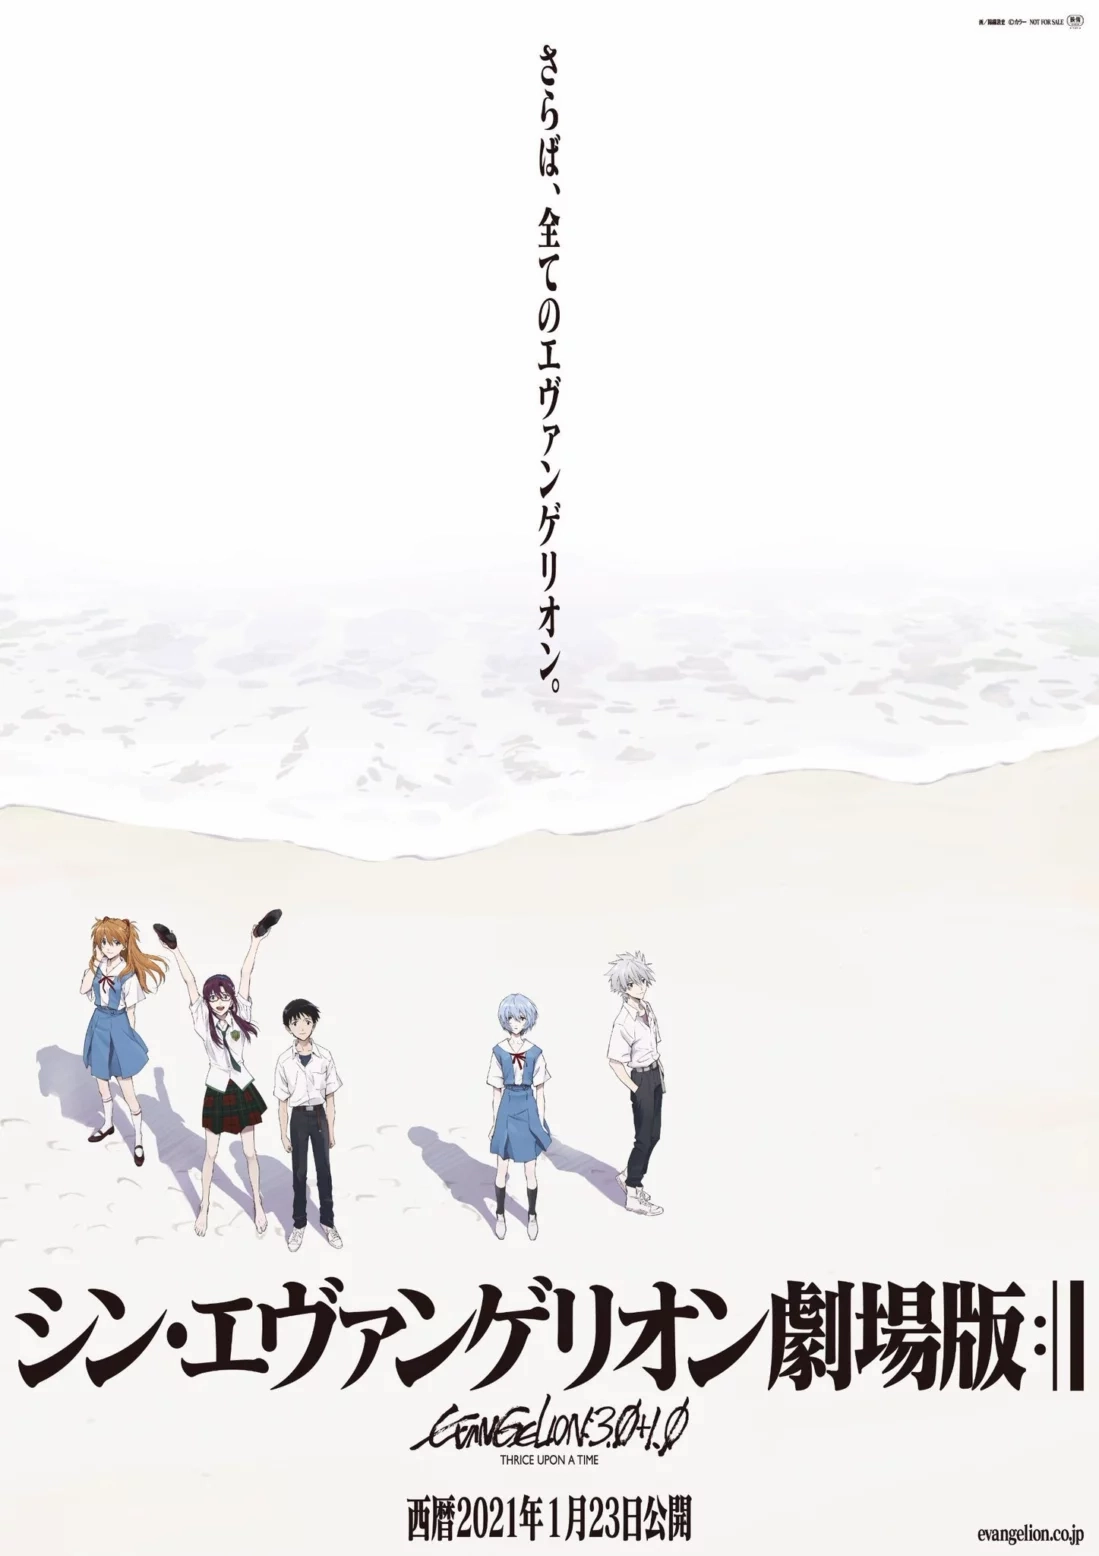 Еще один трейлер и постер Evangelion: 3.0+1.0 Thrice Upon a Time за месяц до премьеры